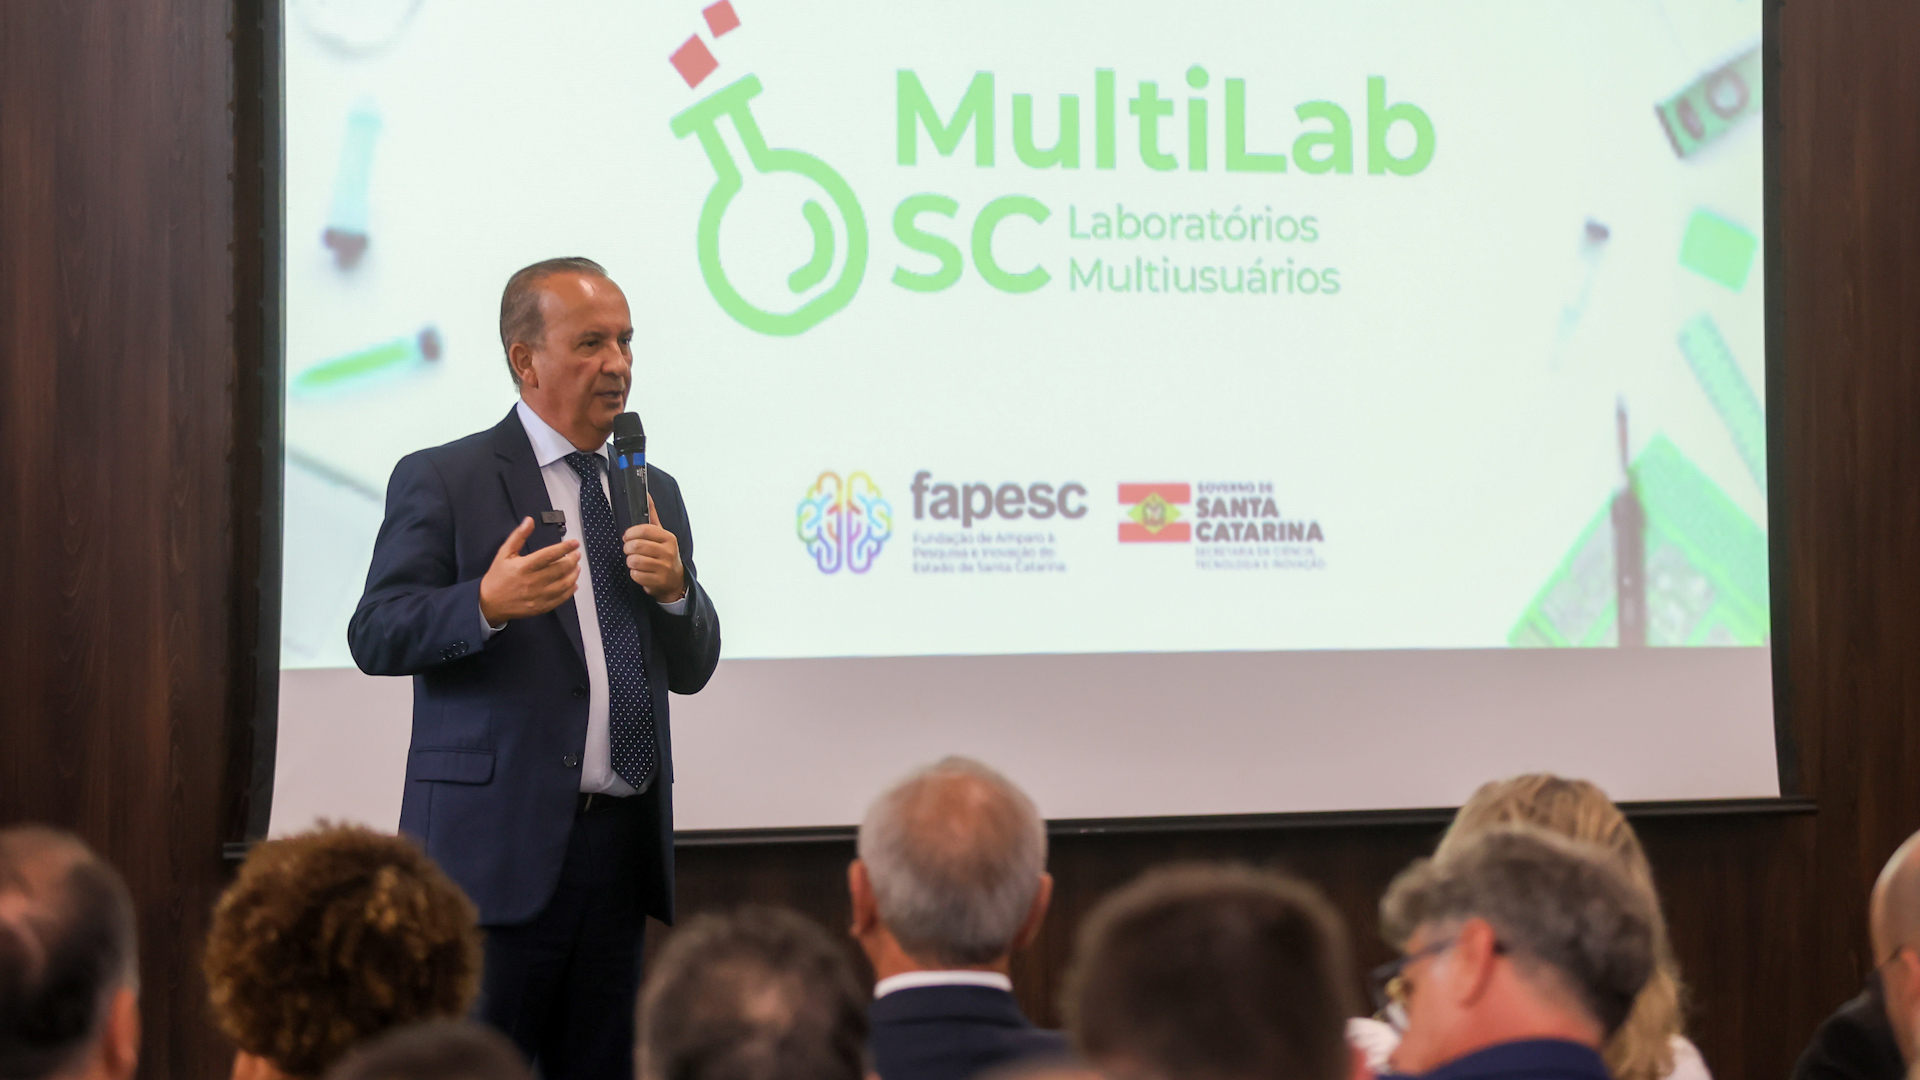 MultiLab SC – Laboratórios Multiusuários: investimentos na pesquisa avançada em universidades